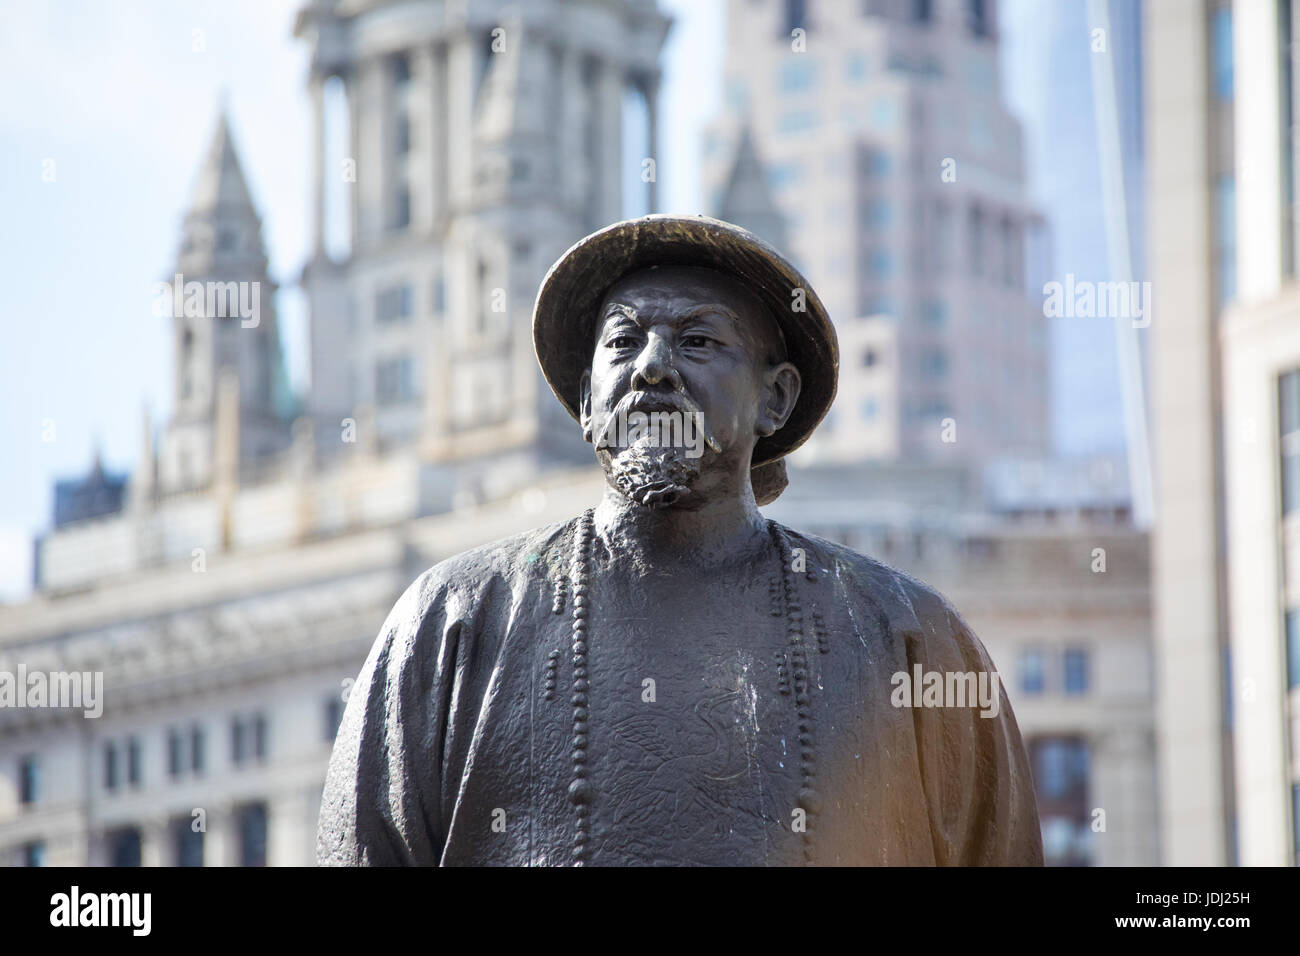 Statue de lin chinois Xu Ze dynastie Ching pionnier de la lutte contre la drogue, Chatham Square, Chinatown, New York Banque D'Images